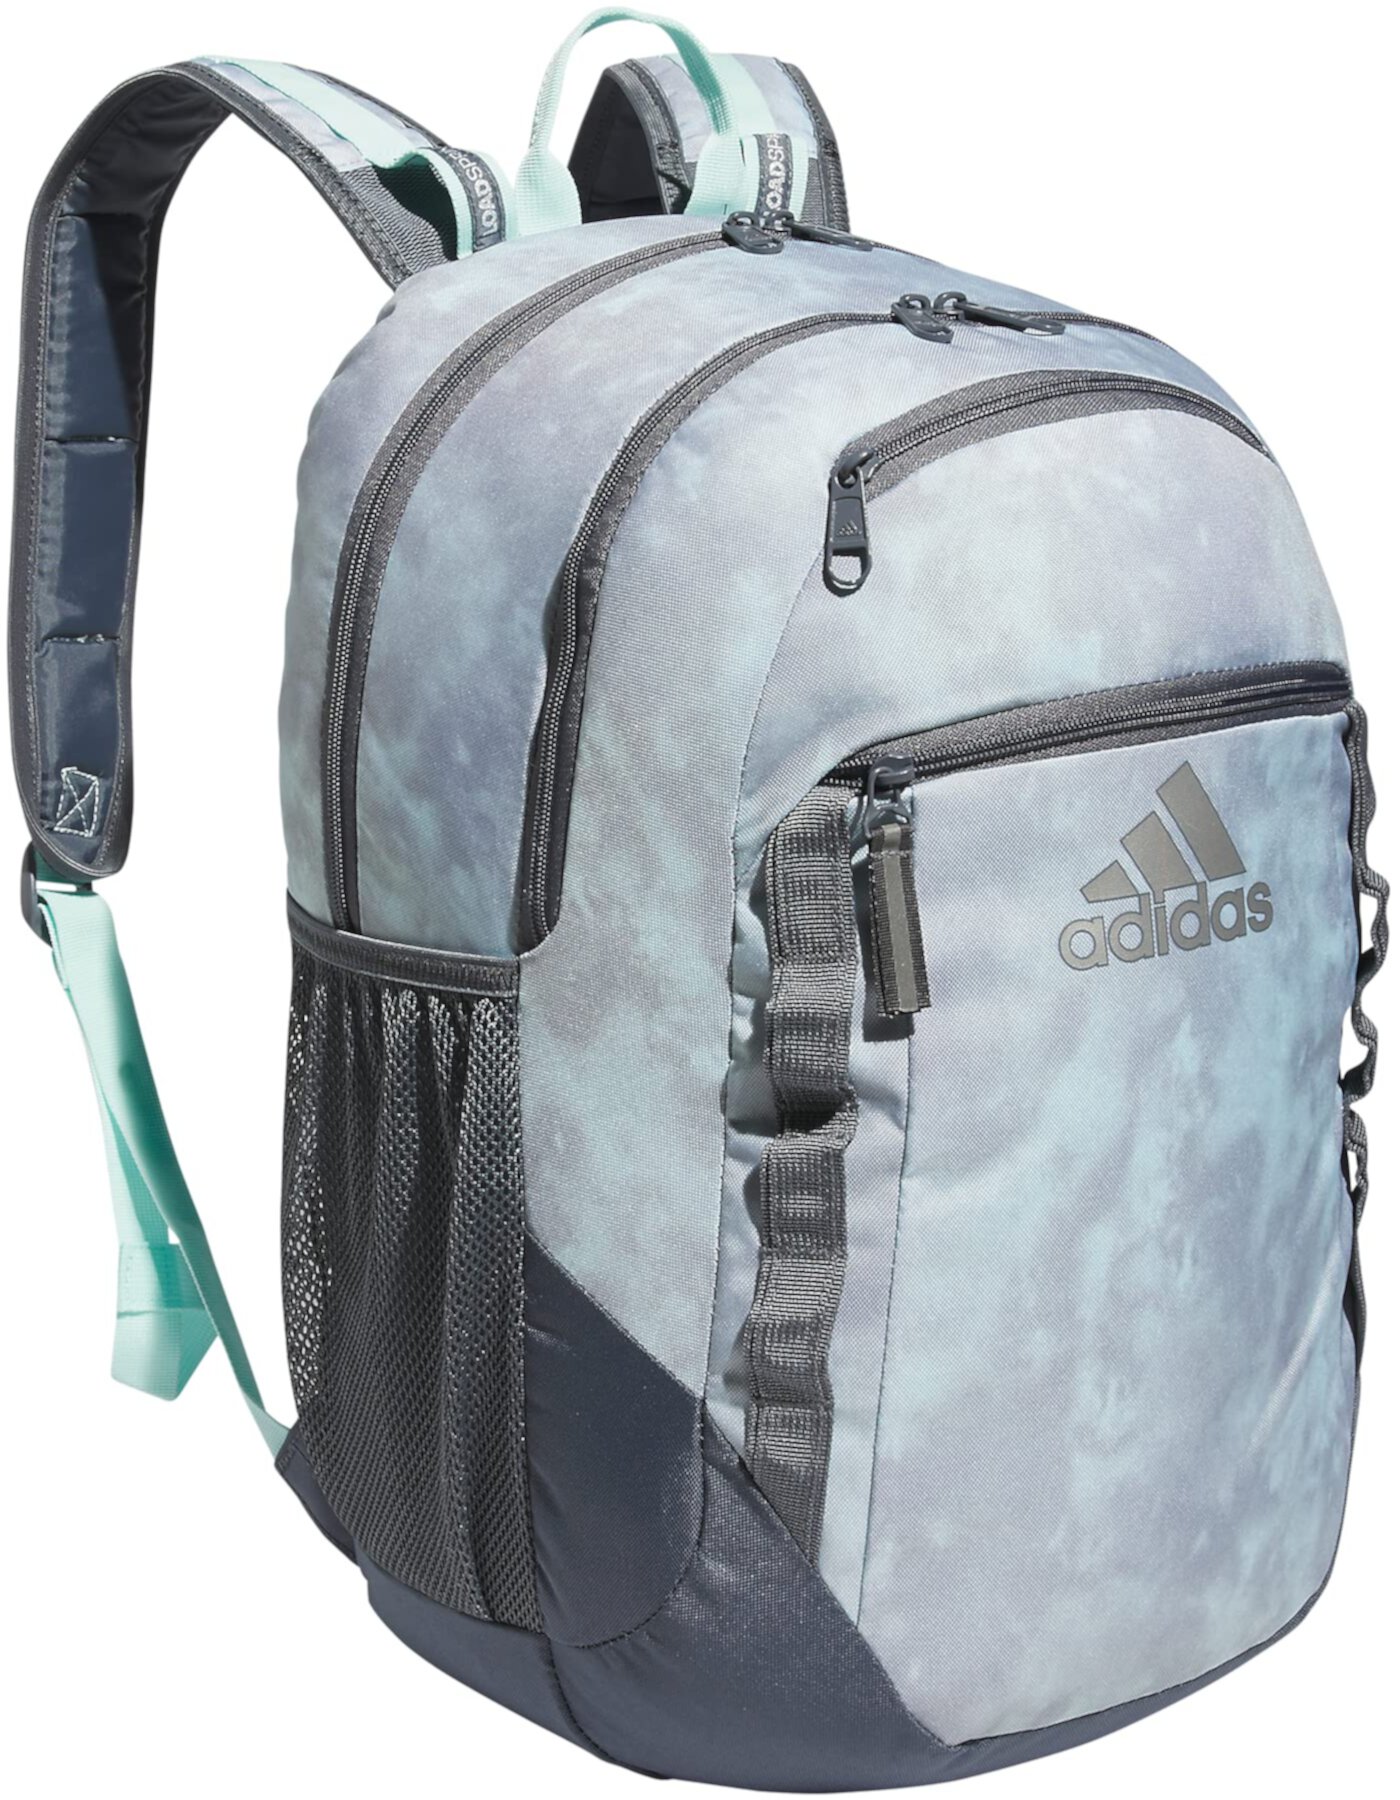 Рюкзак Excel 6 Adidas